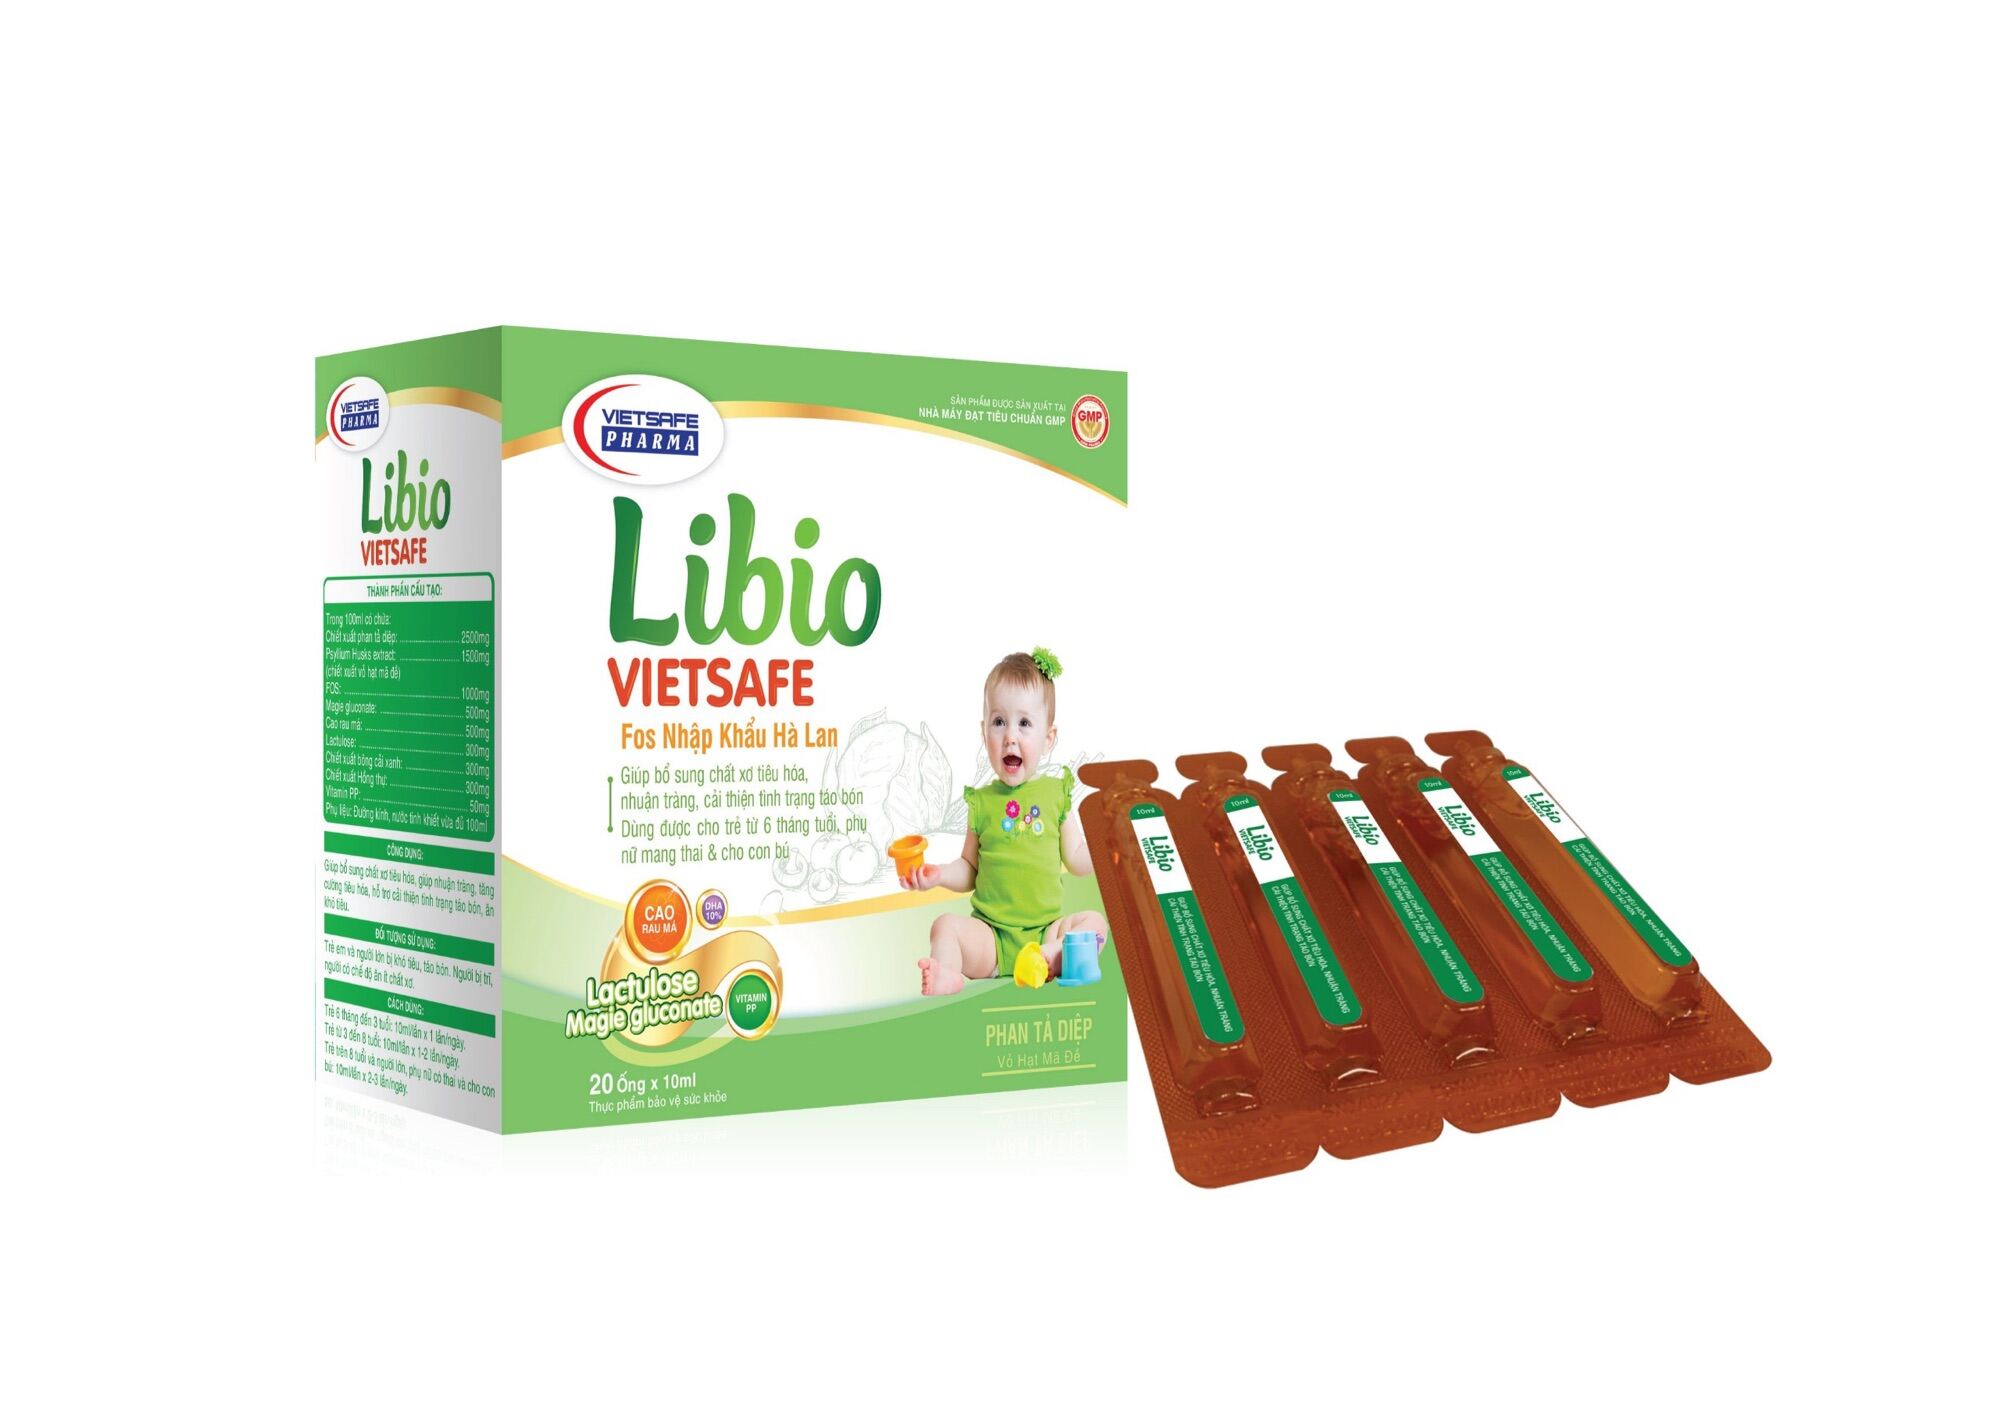 Siro bổ sung chất xơ Cho trẻ Libio vietstafe hỗ trợ táo bón ,hộp 20 ống